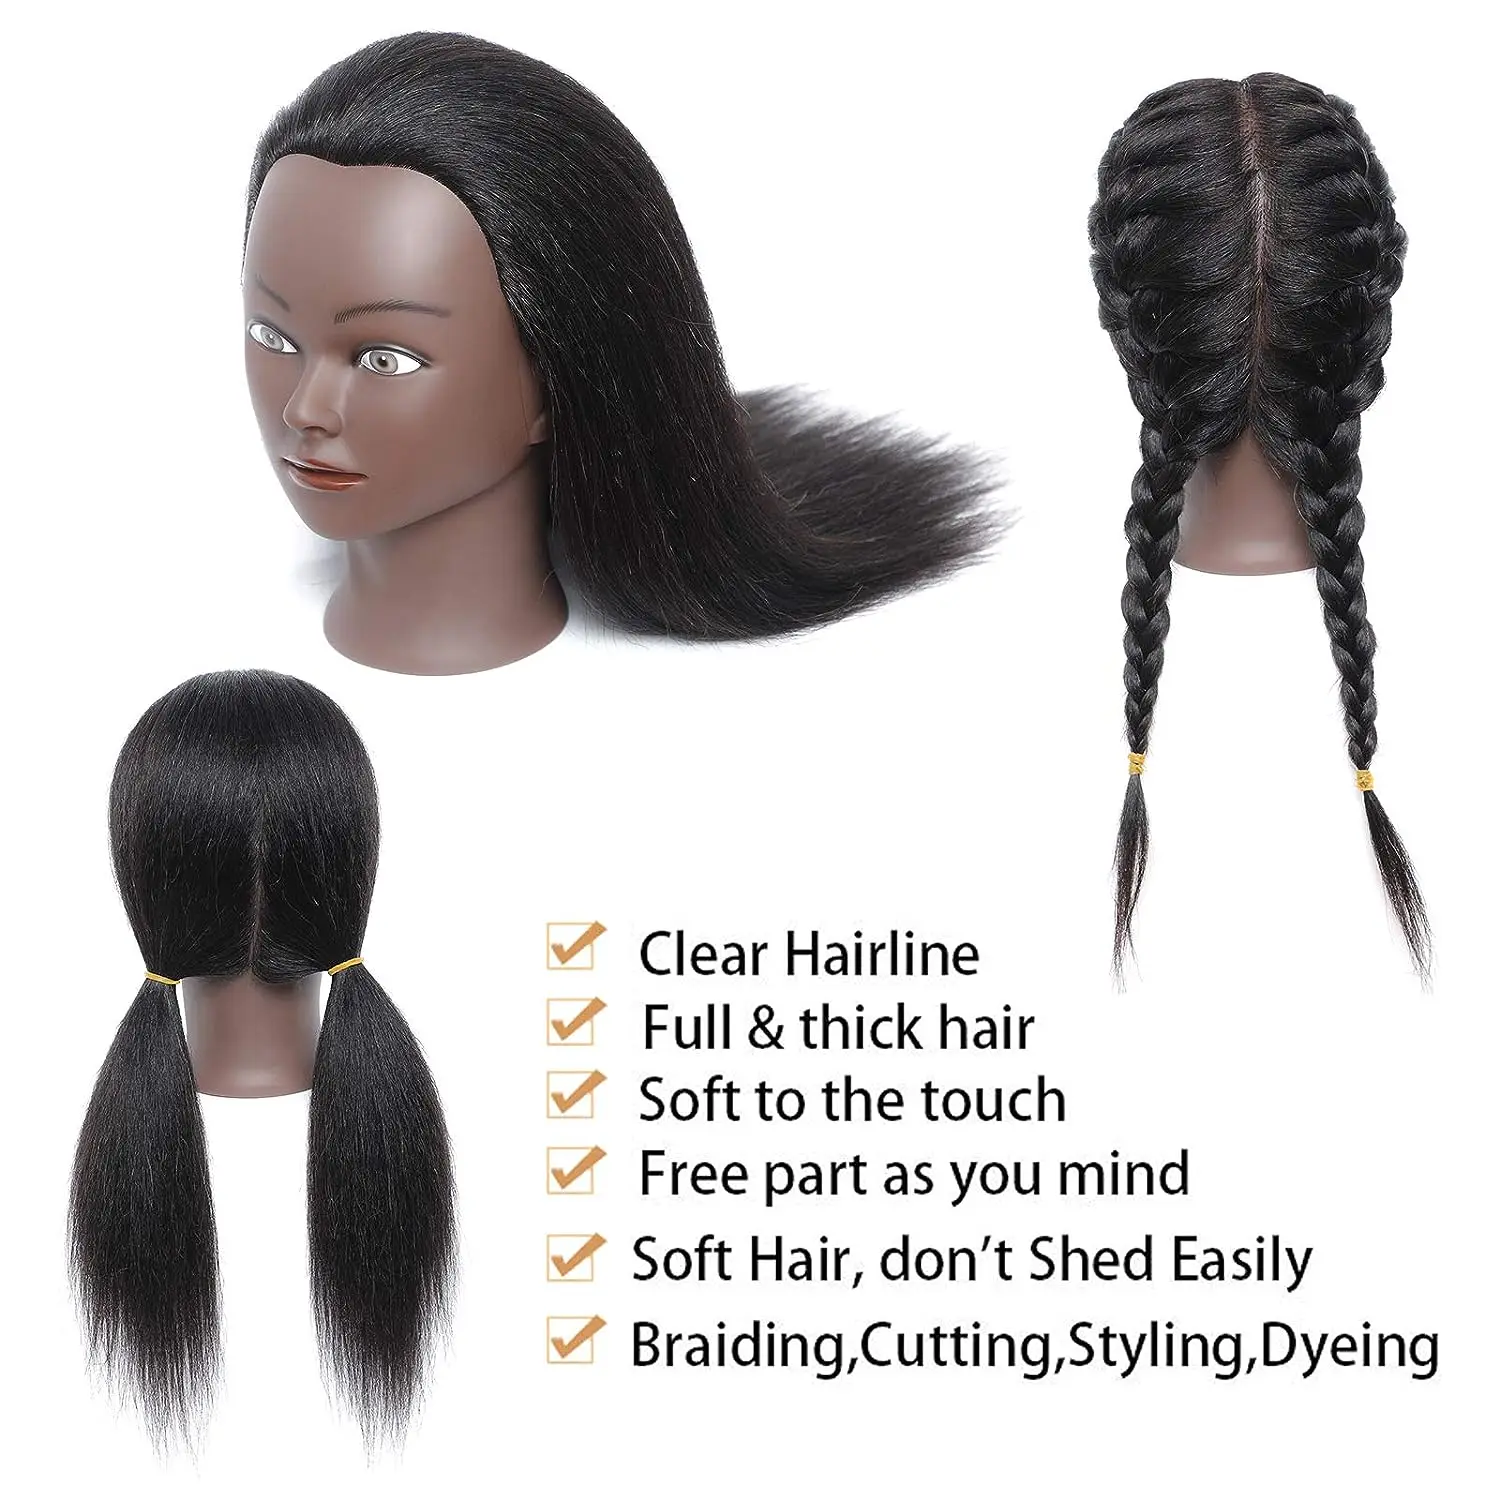 Главата на манекена със синтетична коса, тренировочная главата, косметологический манекен, стоп-моушън главата за фризьорски салон практики, ширити, стайлинг на коса - 2